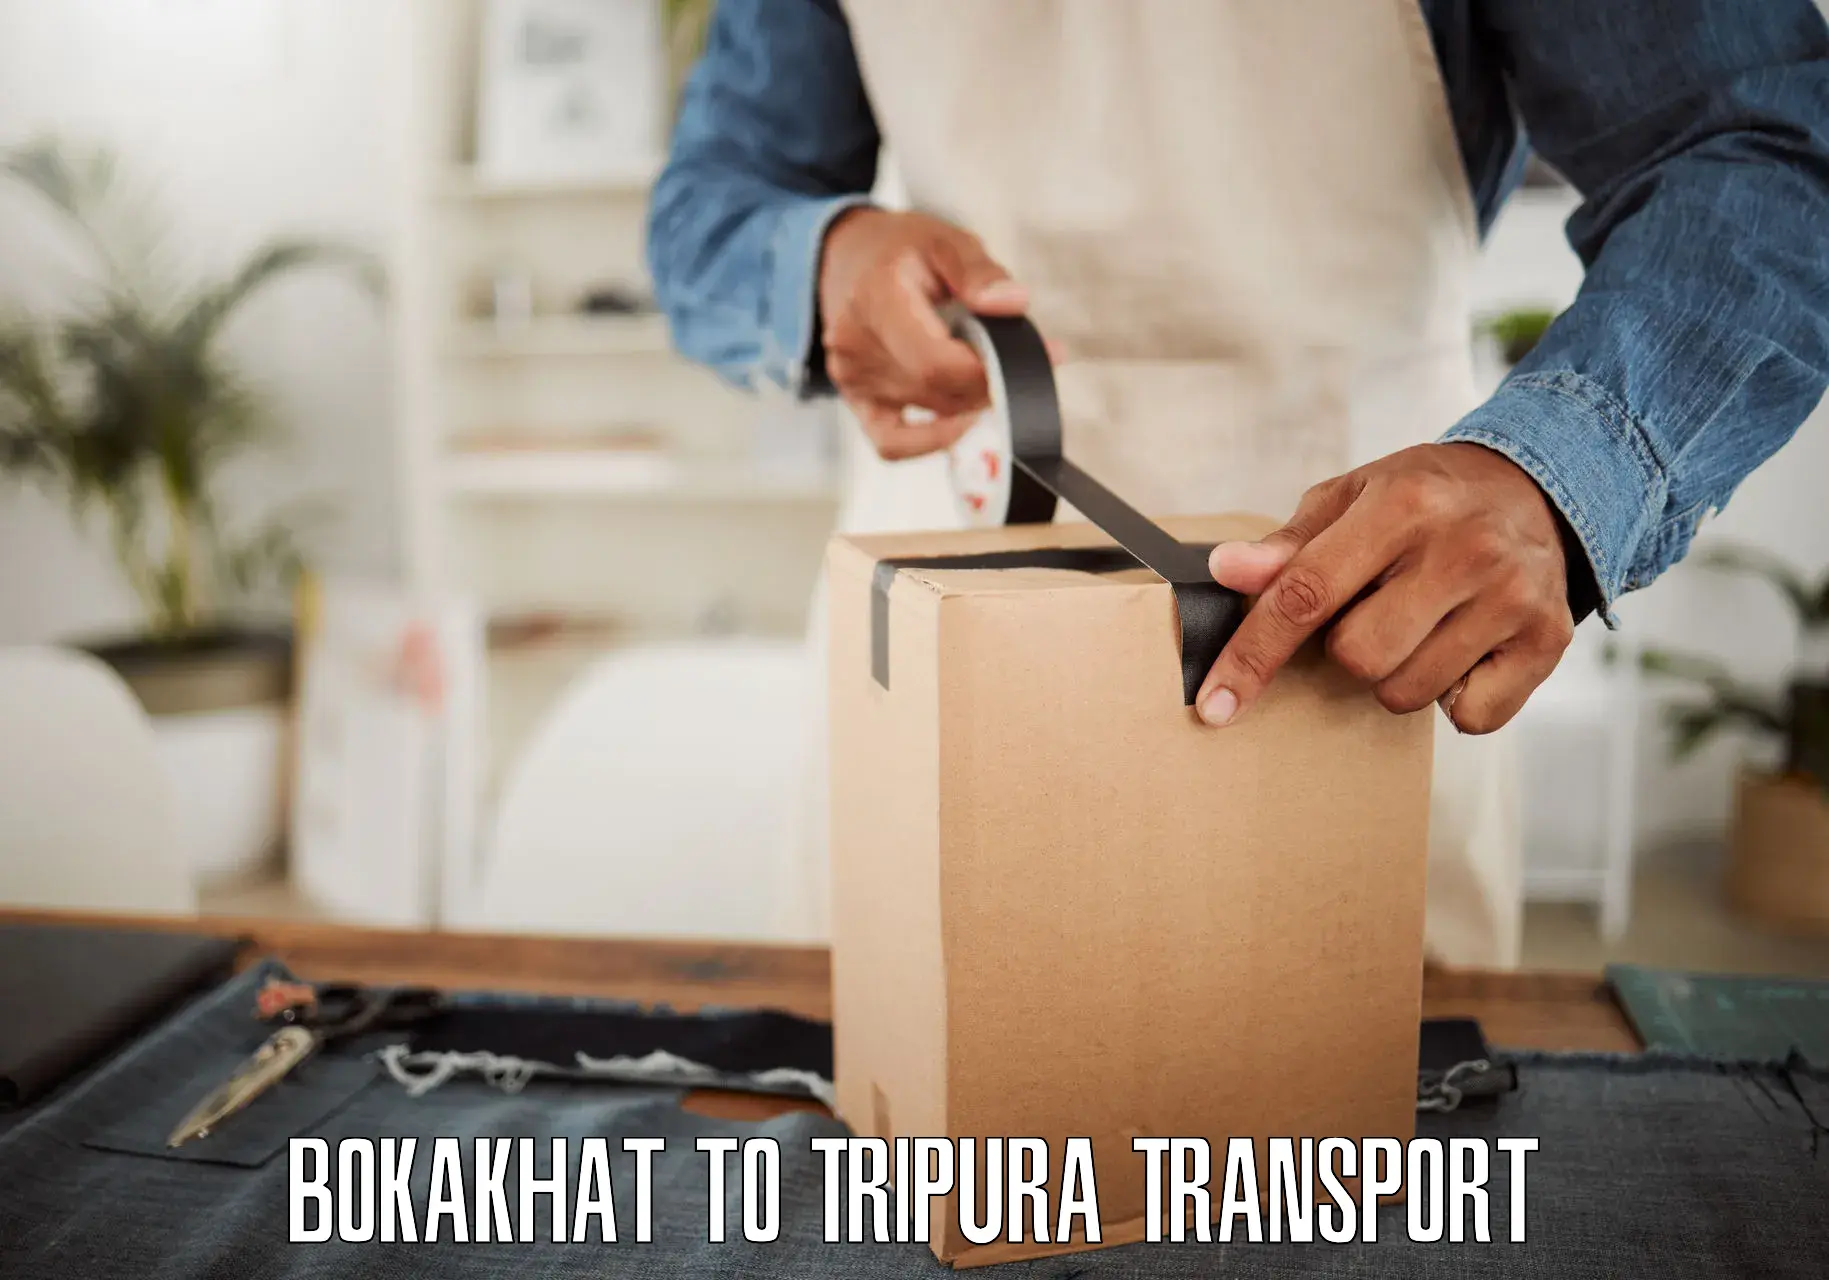 Road transport online services Bokakhat to Dharmanagar